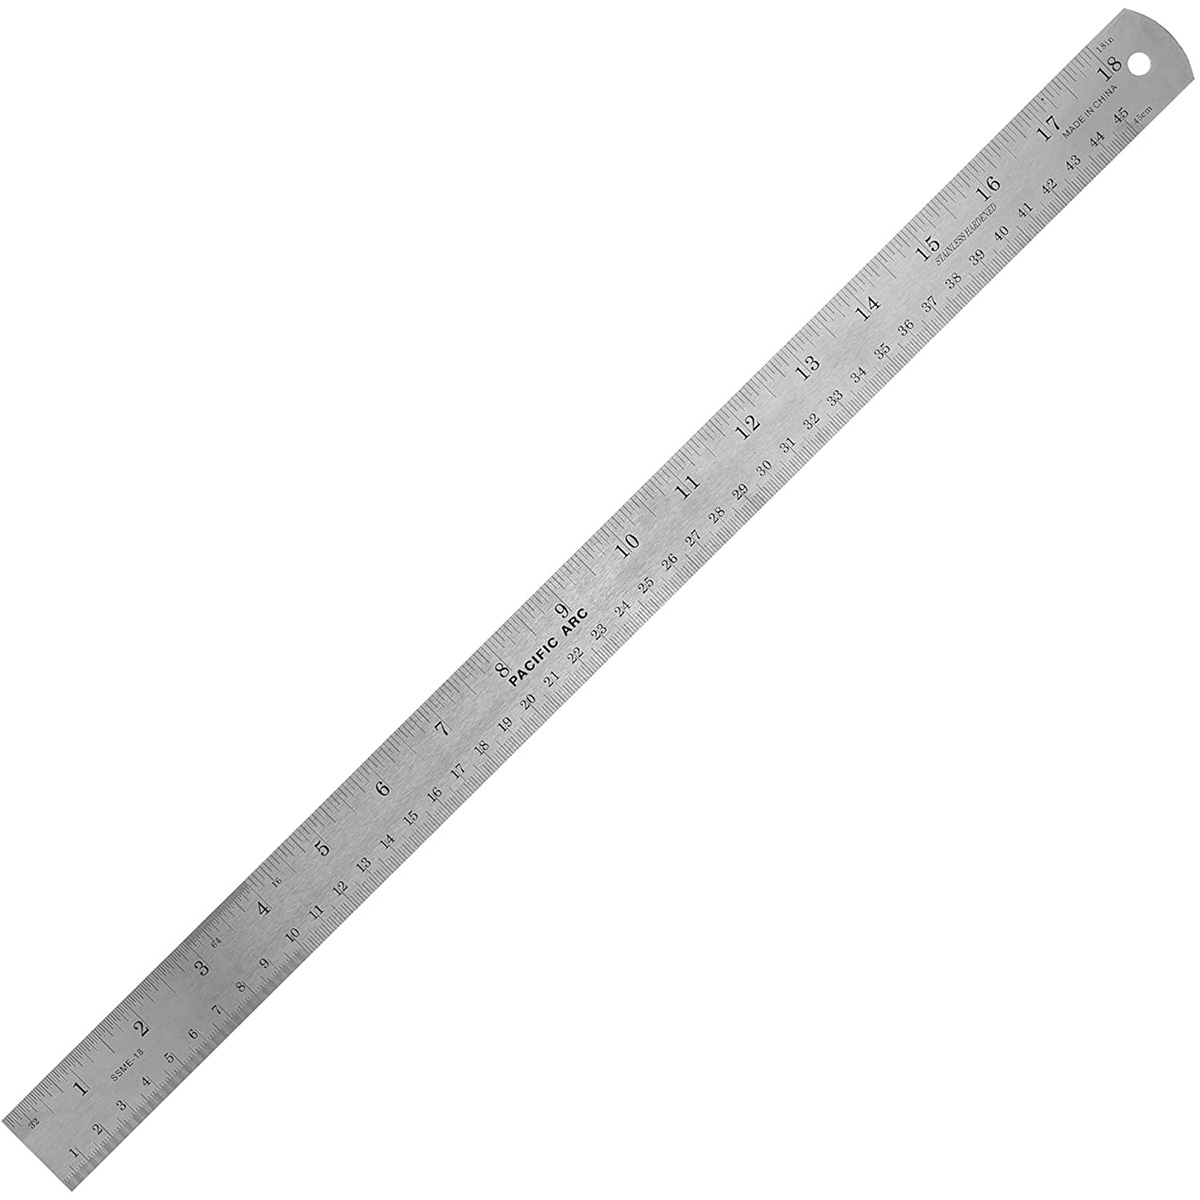 Precision Metal Rulers